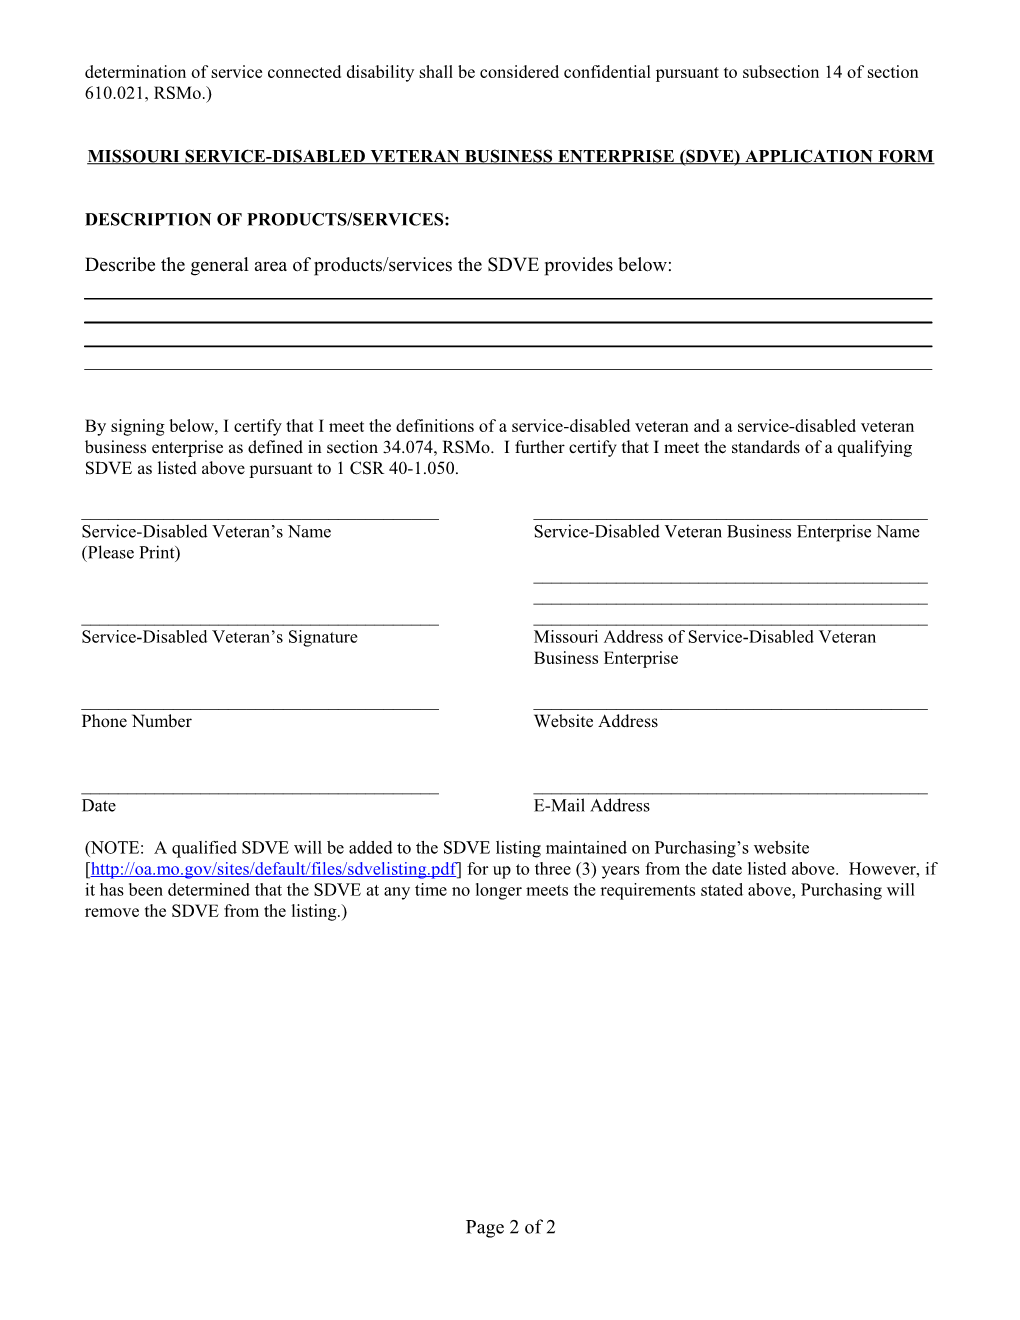 Missouri Service-Disabled Veteran Business Enterprise (Sdve) Application Form